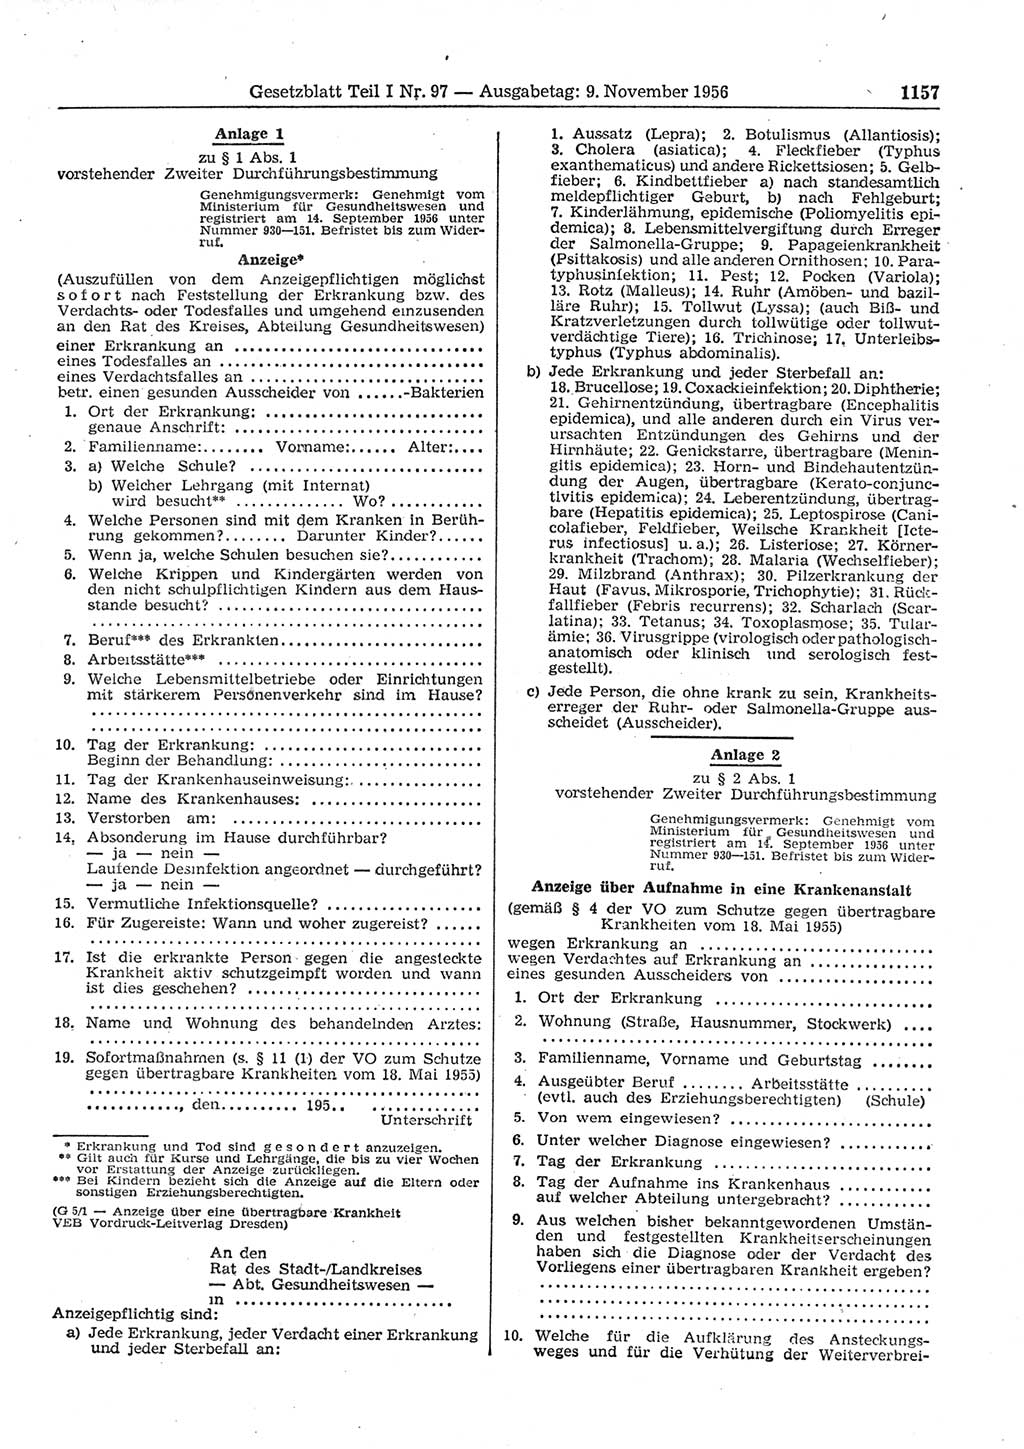 Gesetzblatt (GBl.) der Deutschen Demokratischen Republik (DDR) Teil Ⅰ 1956, Seite 1157 (GBl. DDR Ⅰ 1956, S. 1157)